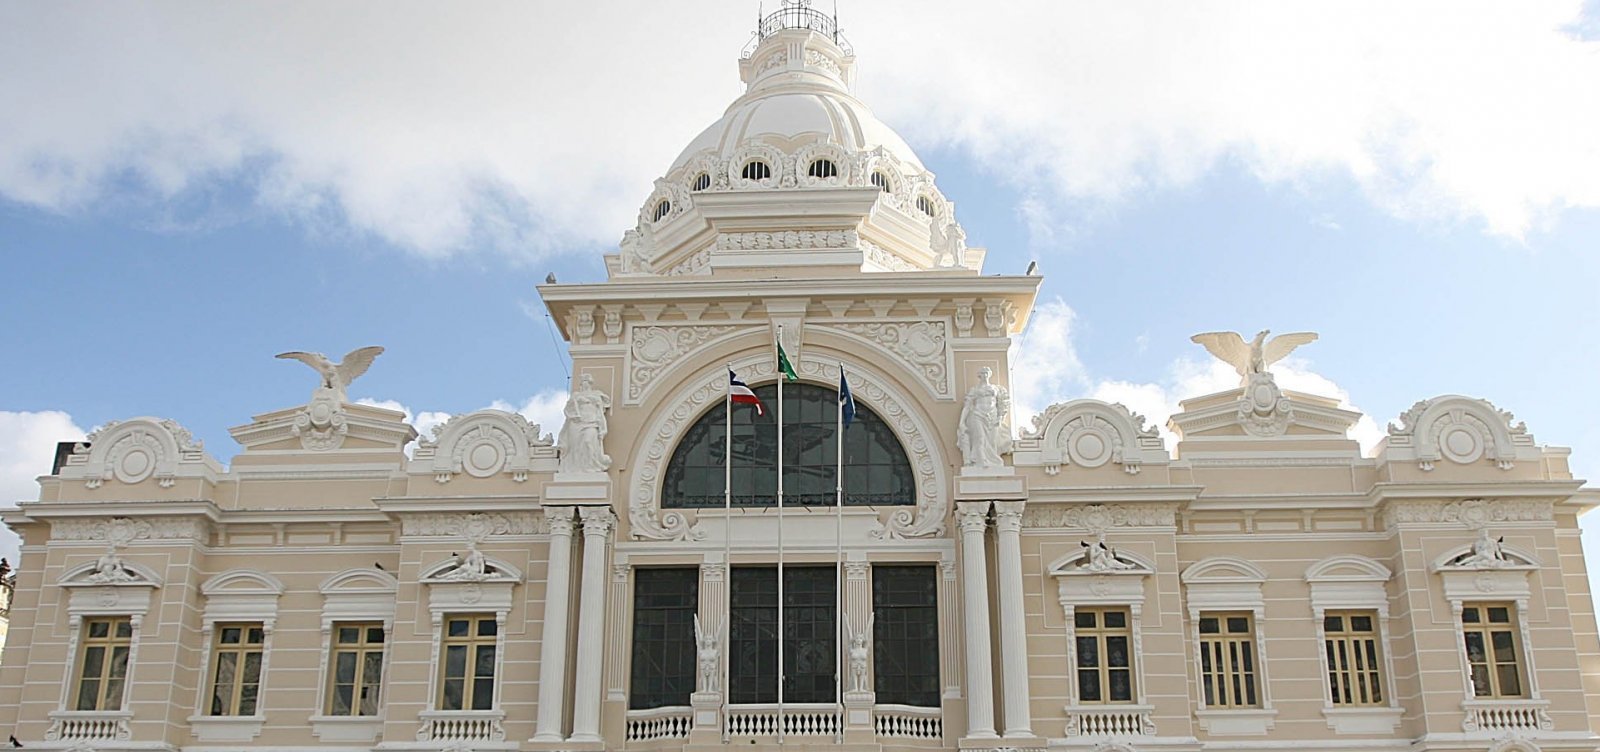 Com possibilidade de virar hotel, Palácio Rio Branco vai receber 'abraço simbólico'